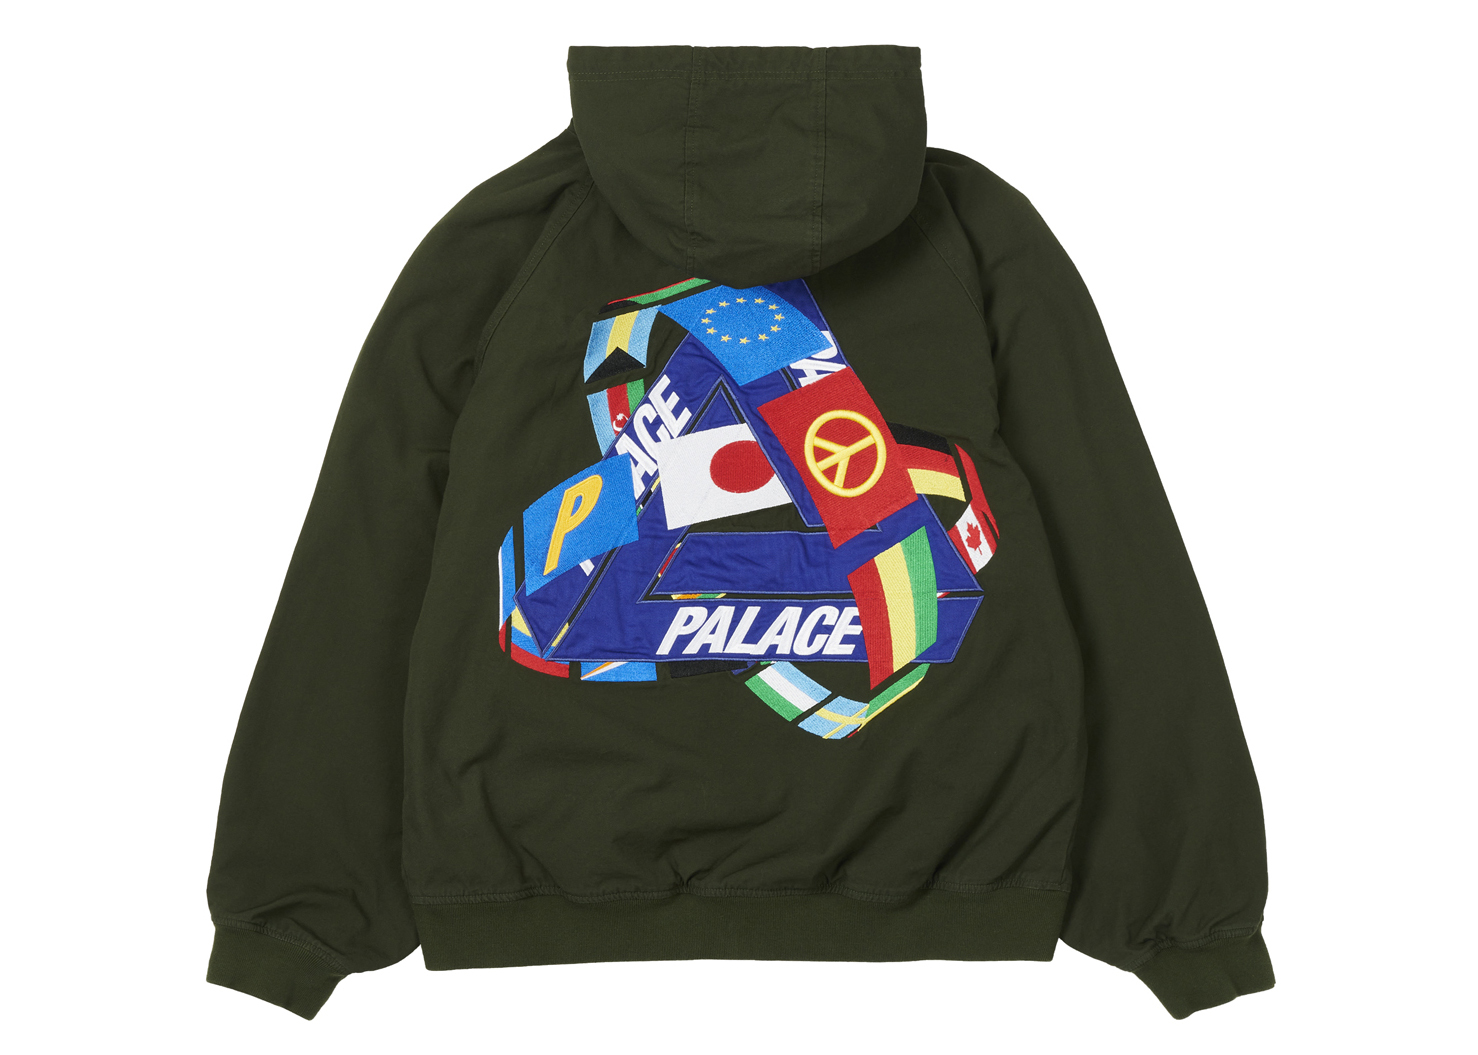 Palace Tri-Flag Hooded Jacket Olive